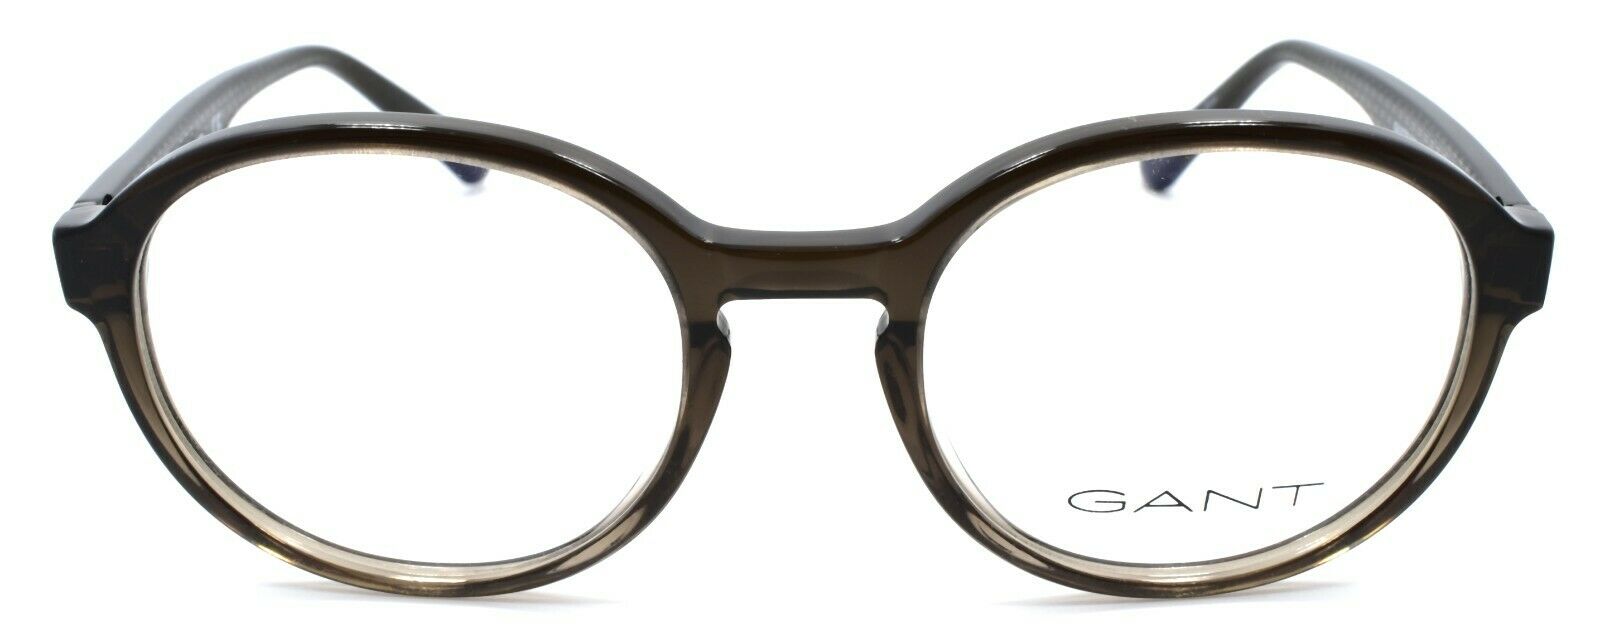 2-GANT GA3179 098 Men's Eyeglasses Frames 49-19-145 Gray Green-889214020765-IKSpecs